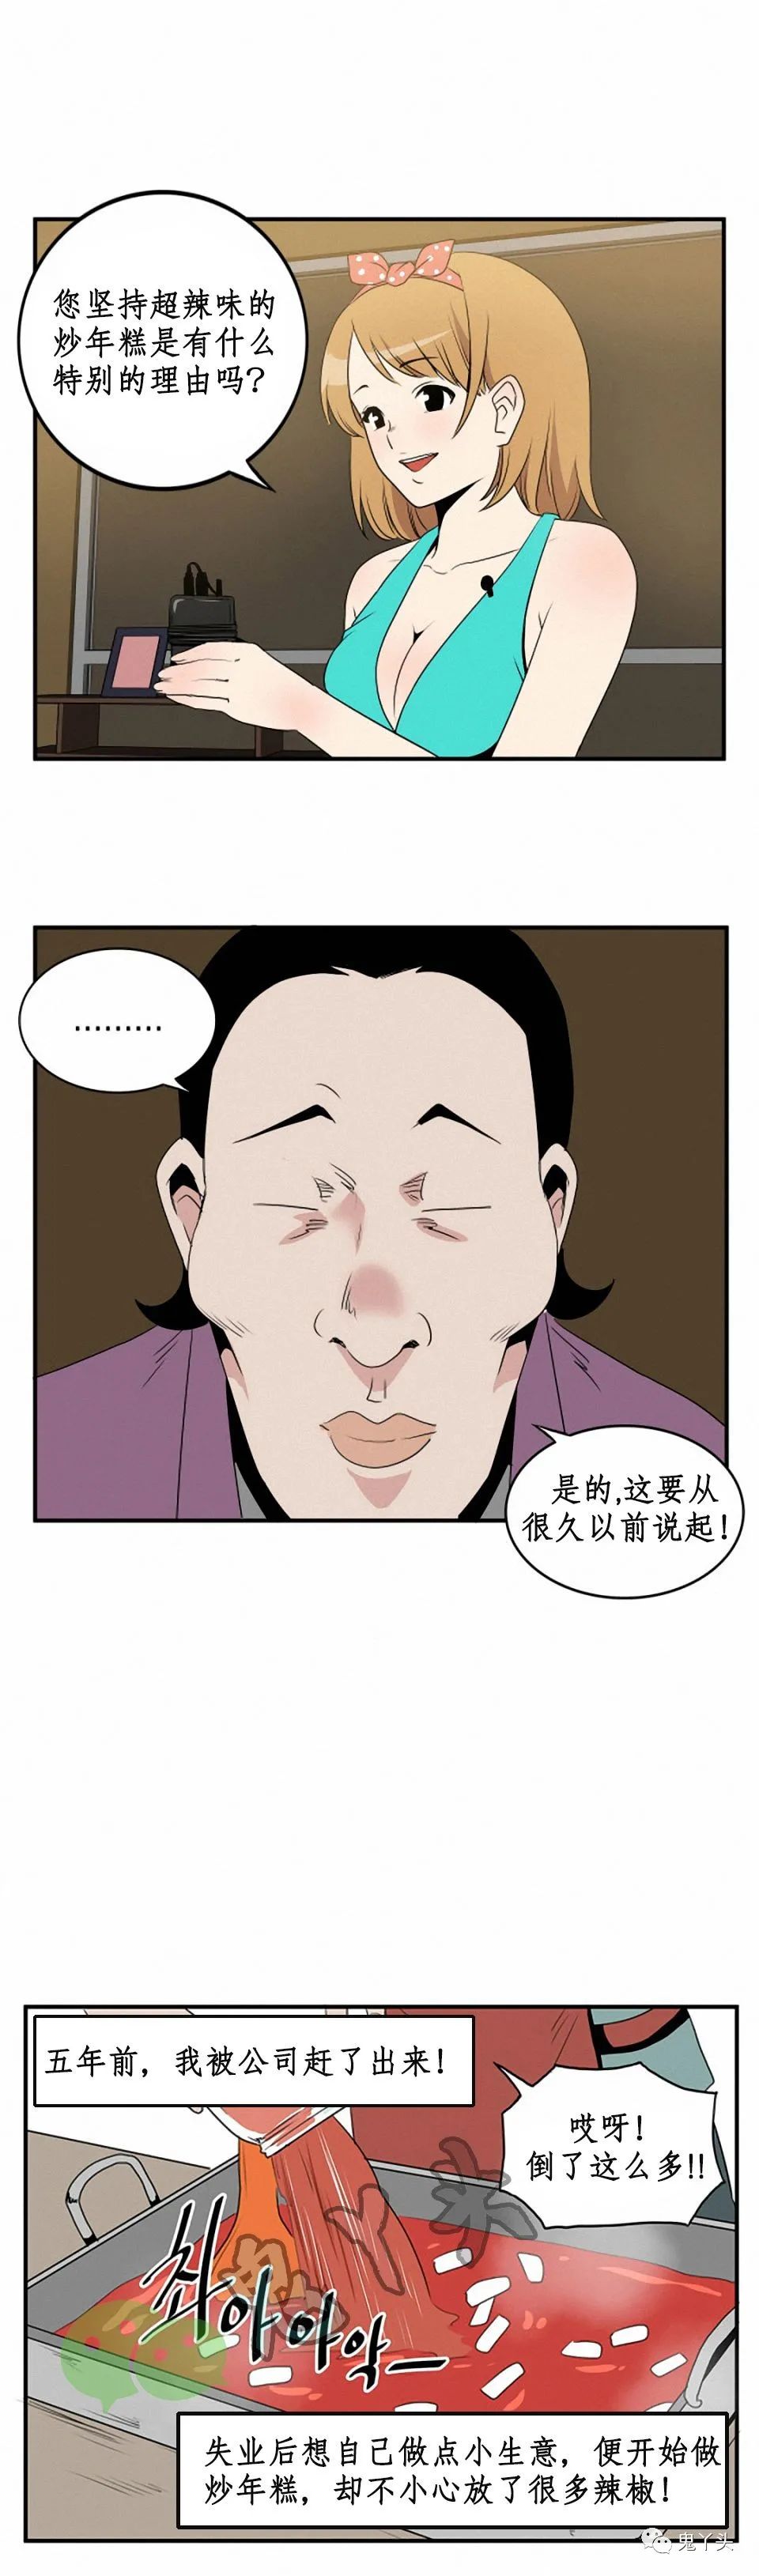 韩国<a href=https://www.cgzck.com/duanpian/gaoxiao/ target=_blank class=infotextkey>搞笑漫画</a>